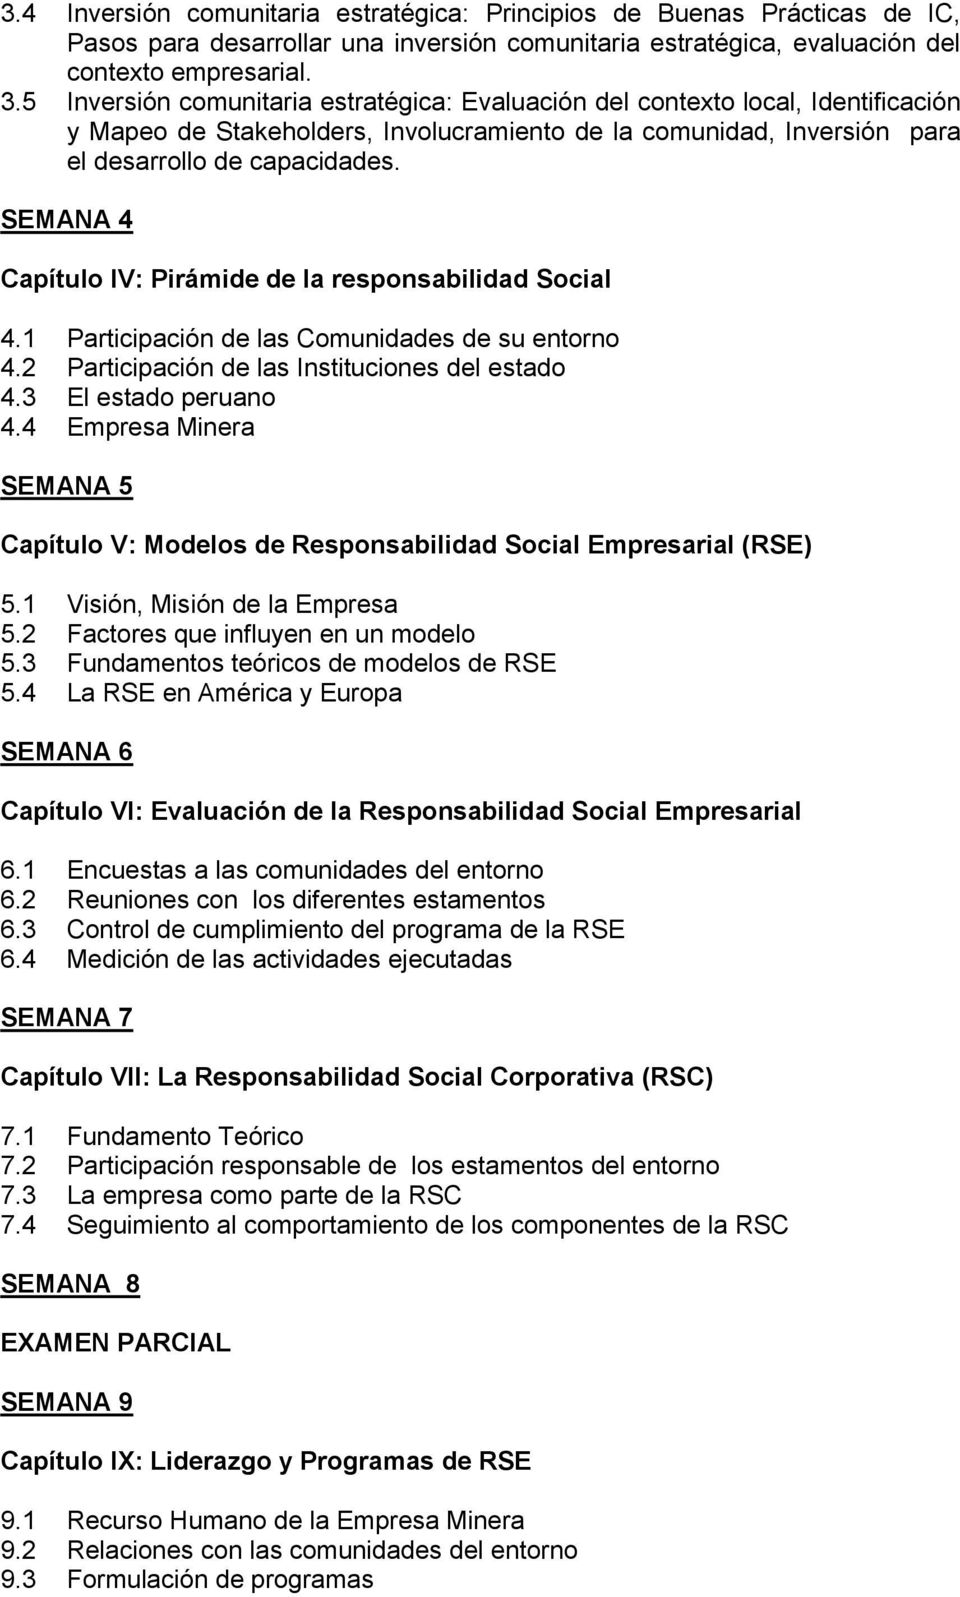 SEMANA 4 Capítulo IV: Pirámide de la responsabilidad Social 4.1 Participación de las Comunidades de su entorno 4.2 Participación de las Instituciones del estado 4.3 El estado peruano 4.